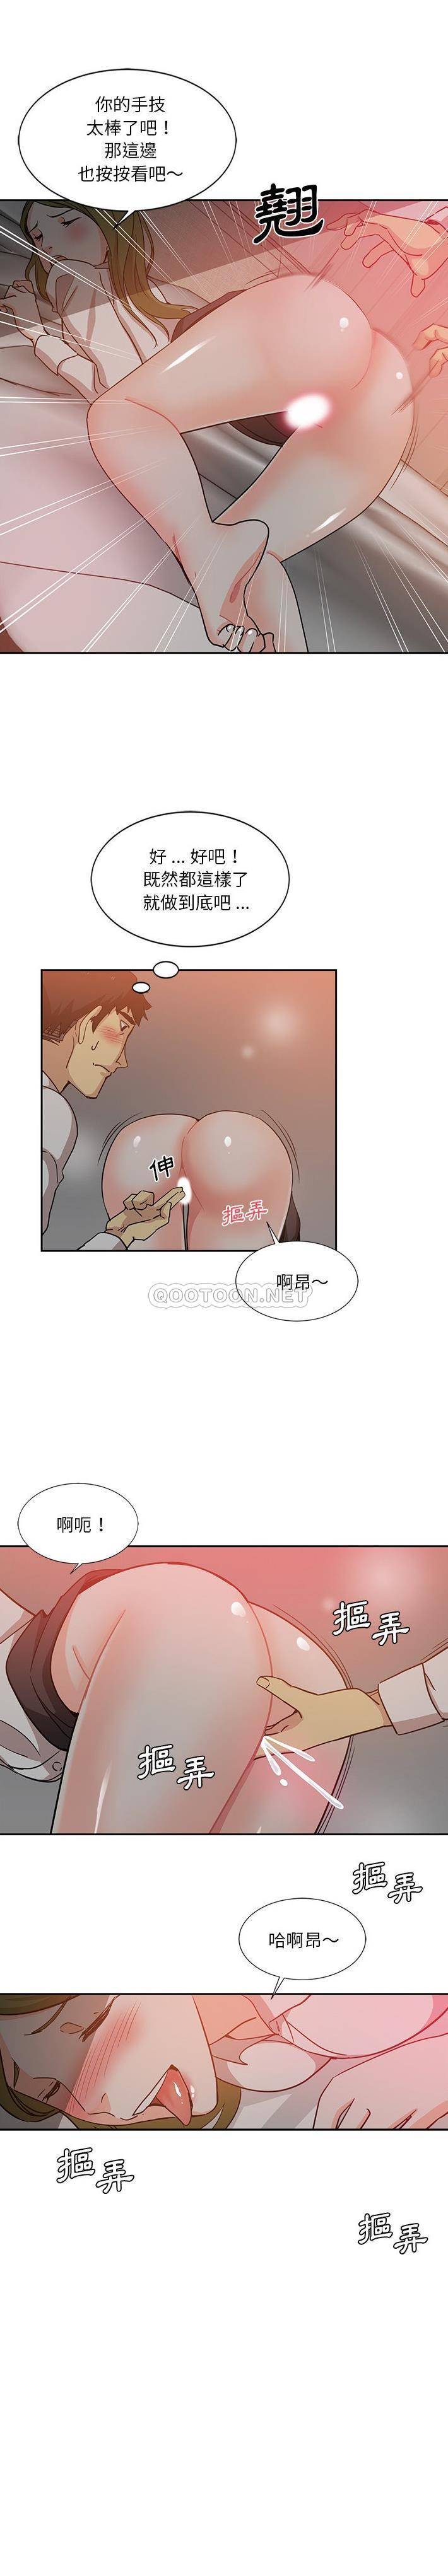 韩国污漫画 危險純友誼 第6话 10